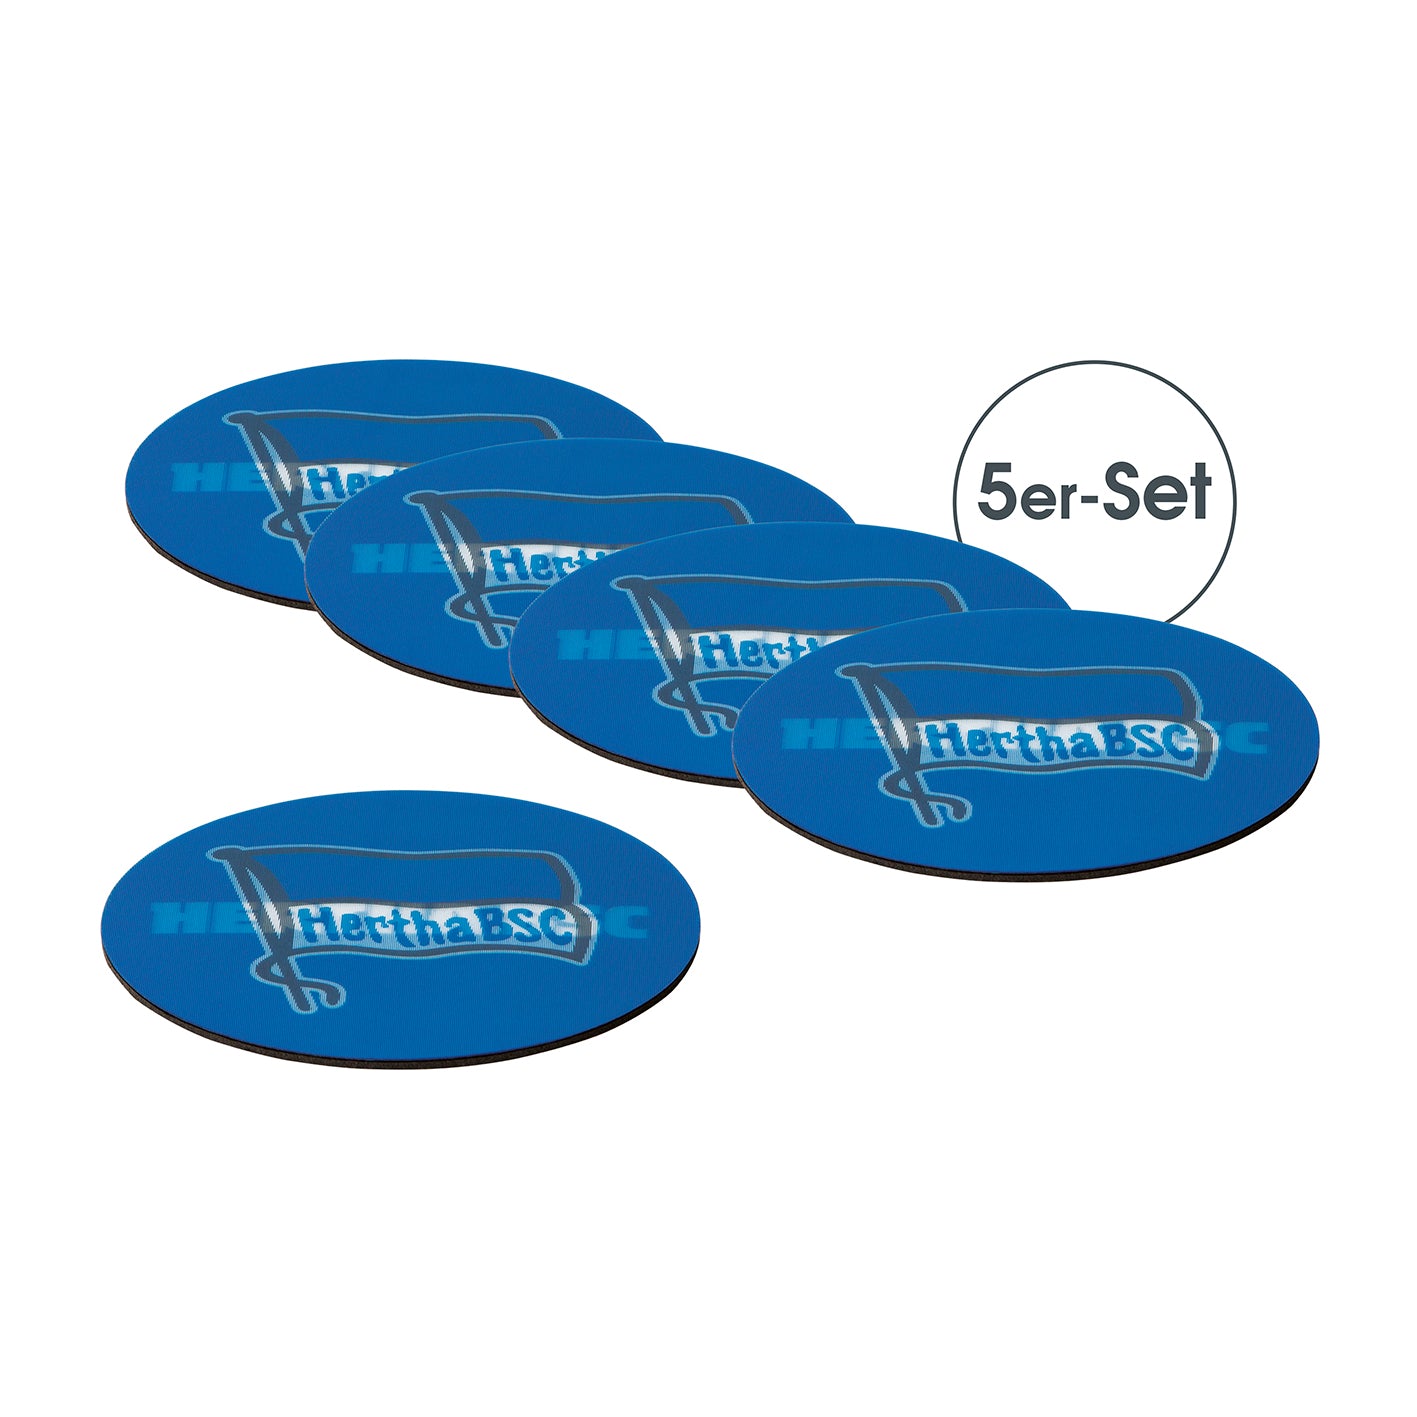 Untersetzer 3D - 10,5 x 10,5 cm - 5er-Set - blau/weiß mit Logo von Hertha BSC